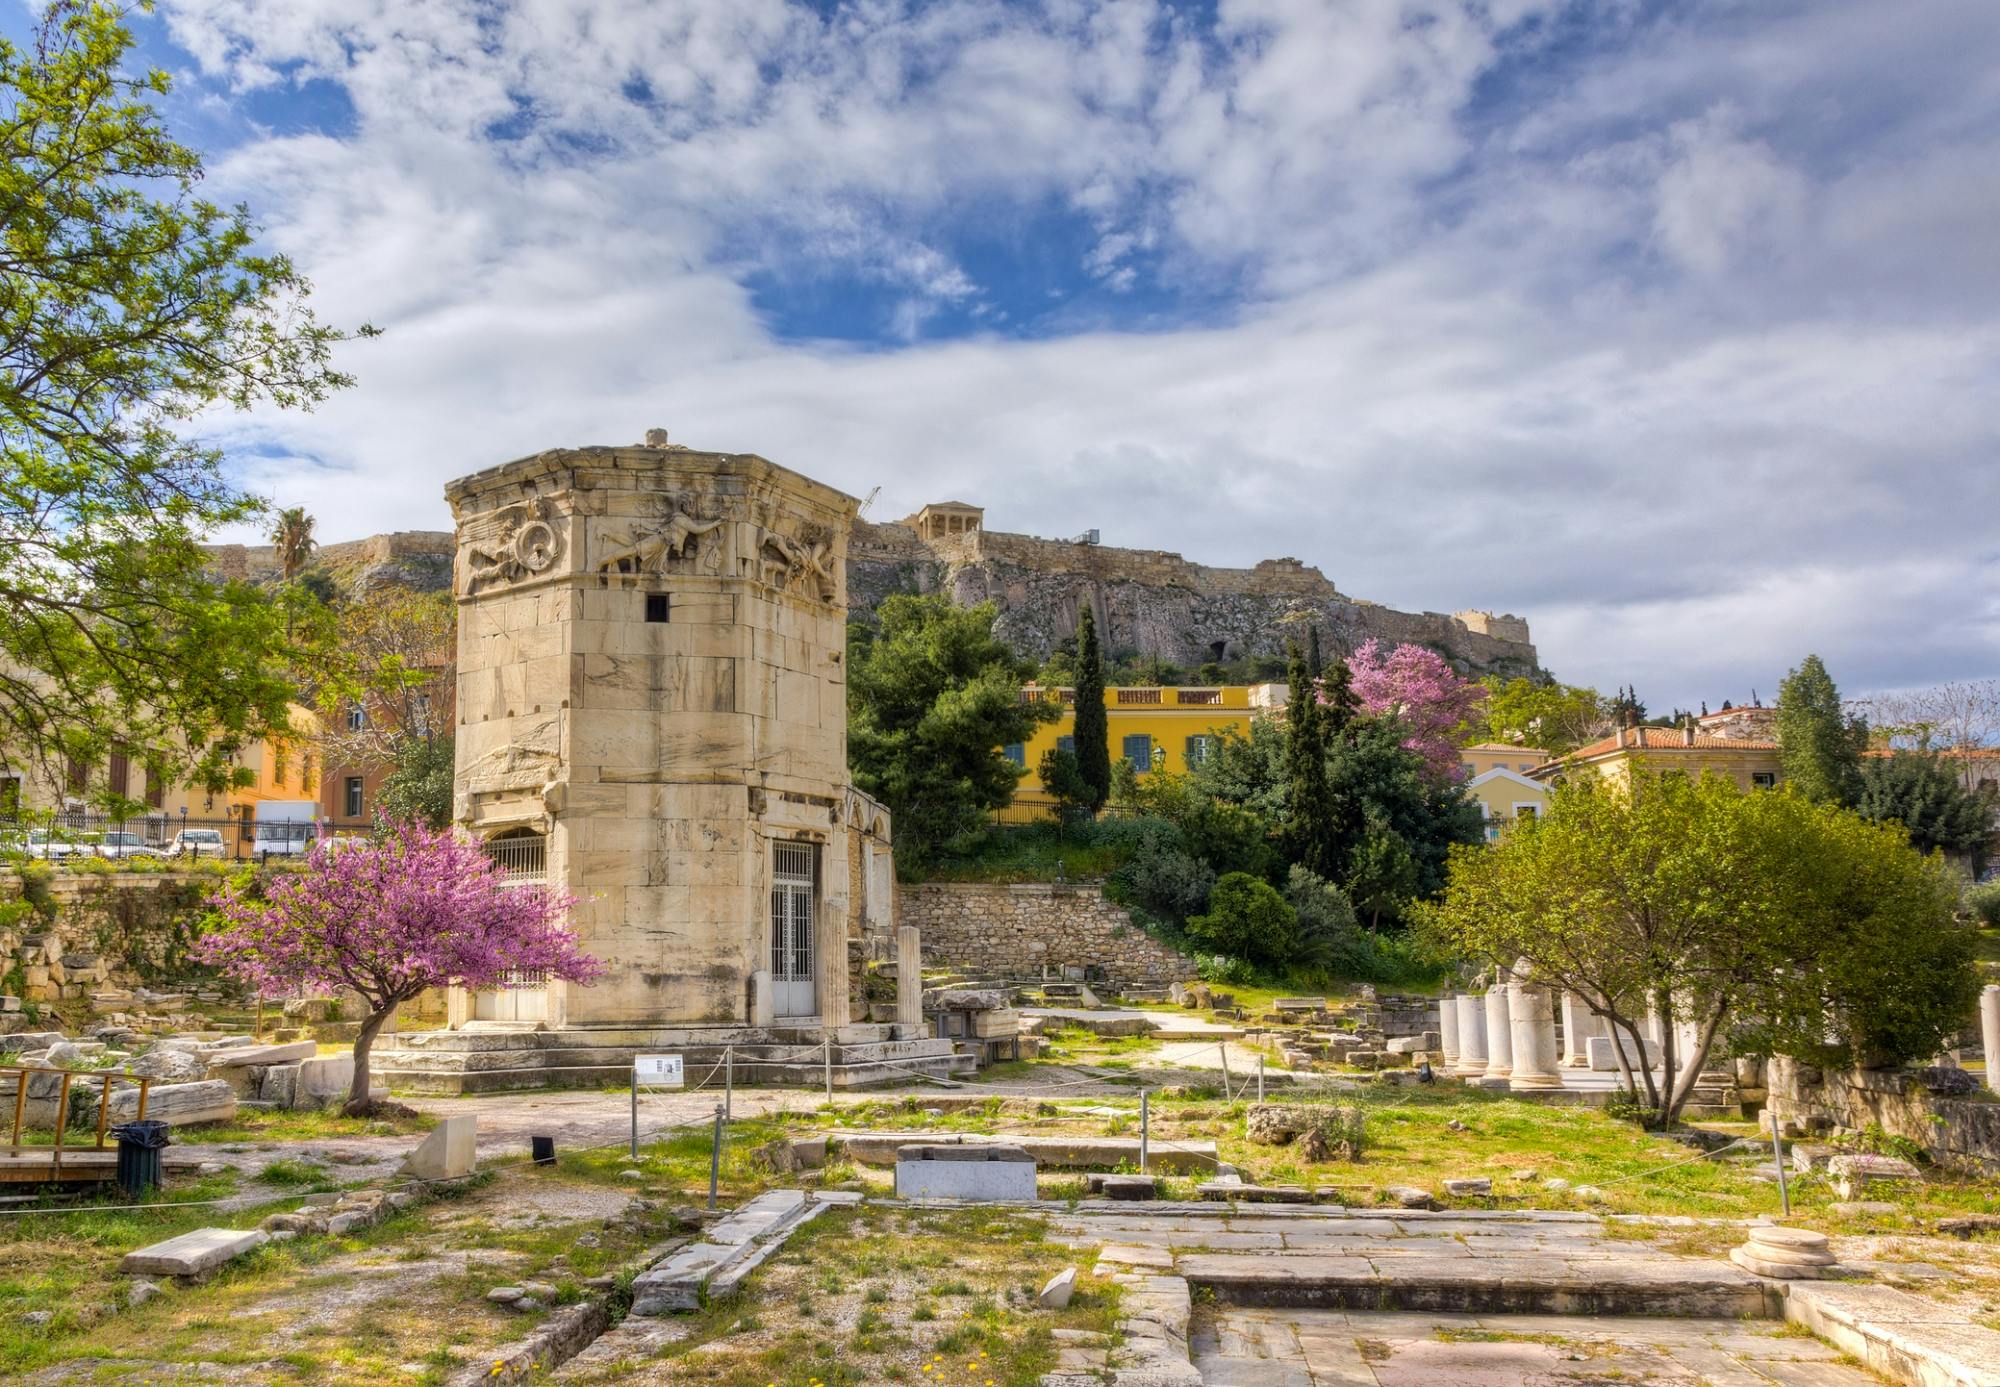 Biglietto elettronico per l'Agorà romana e tour audio autoguidato ad Atene